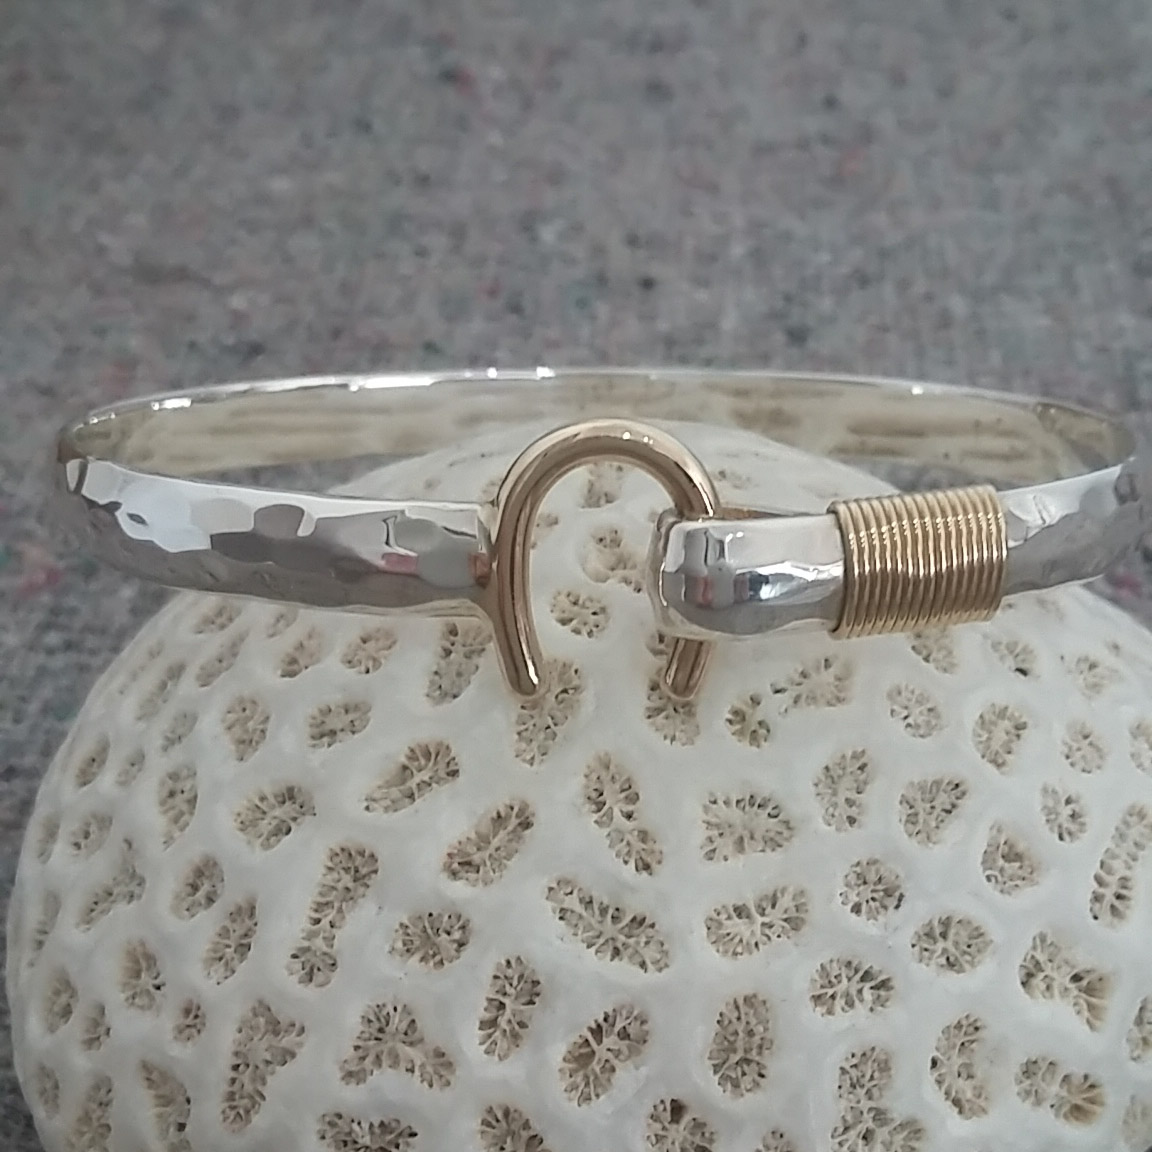 6mm Silver/Gold Hook Bracelet  St. John Bracelet Company - Hook Bracelets